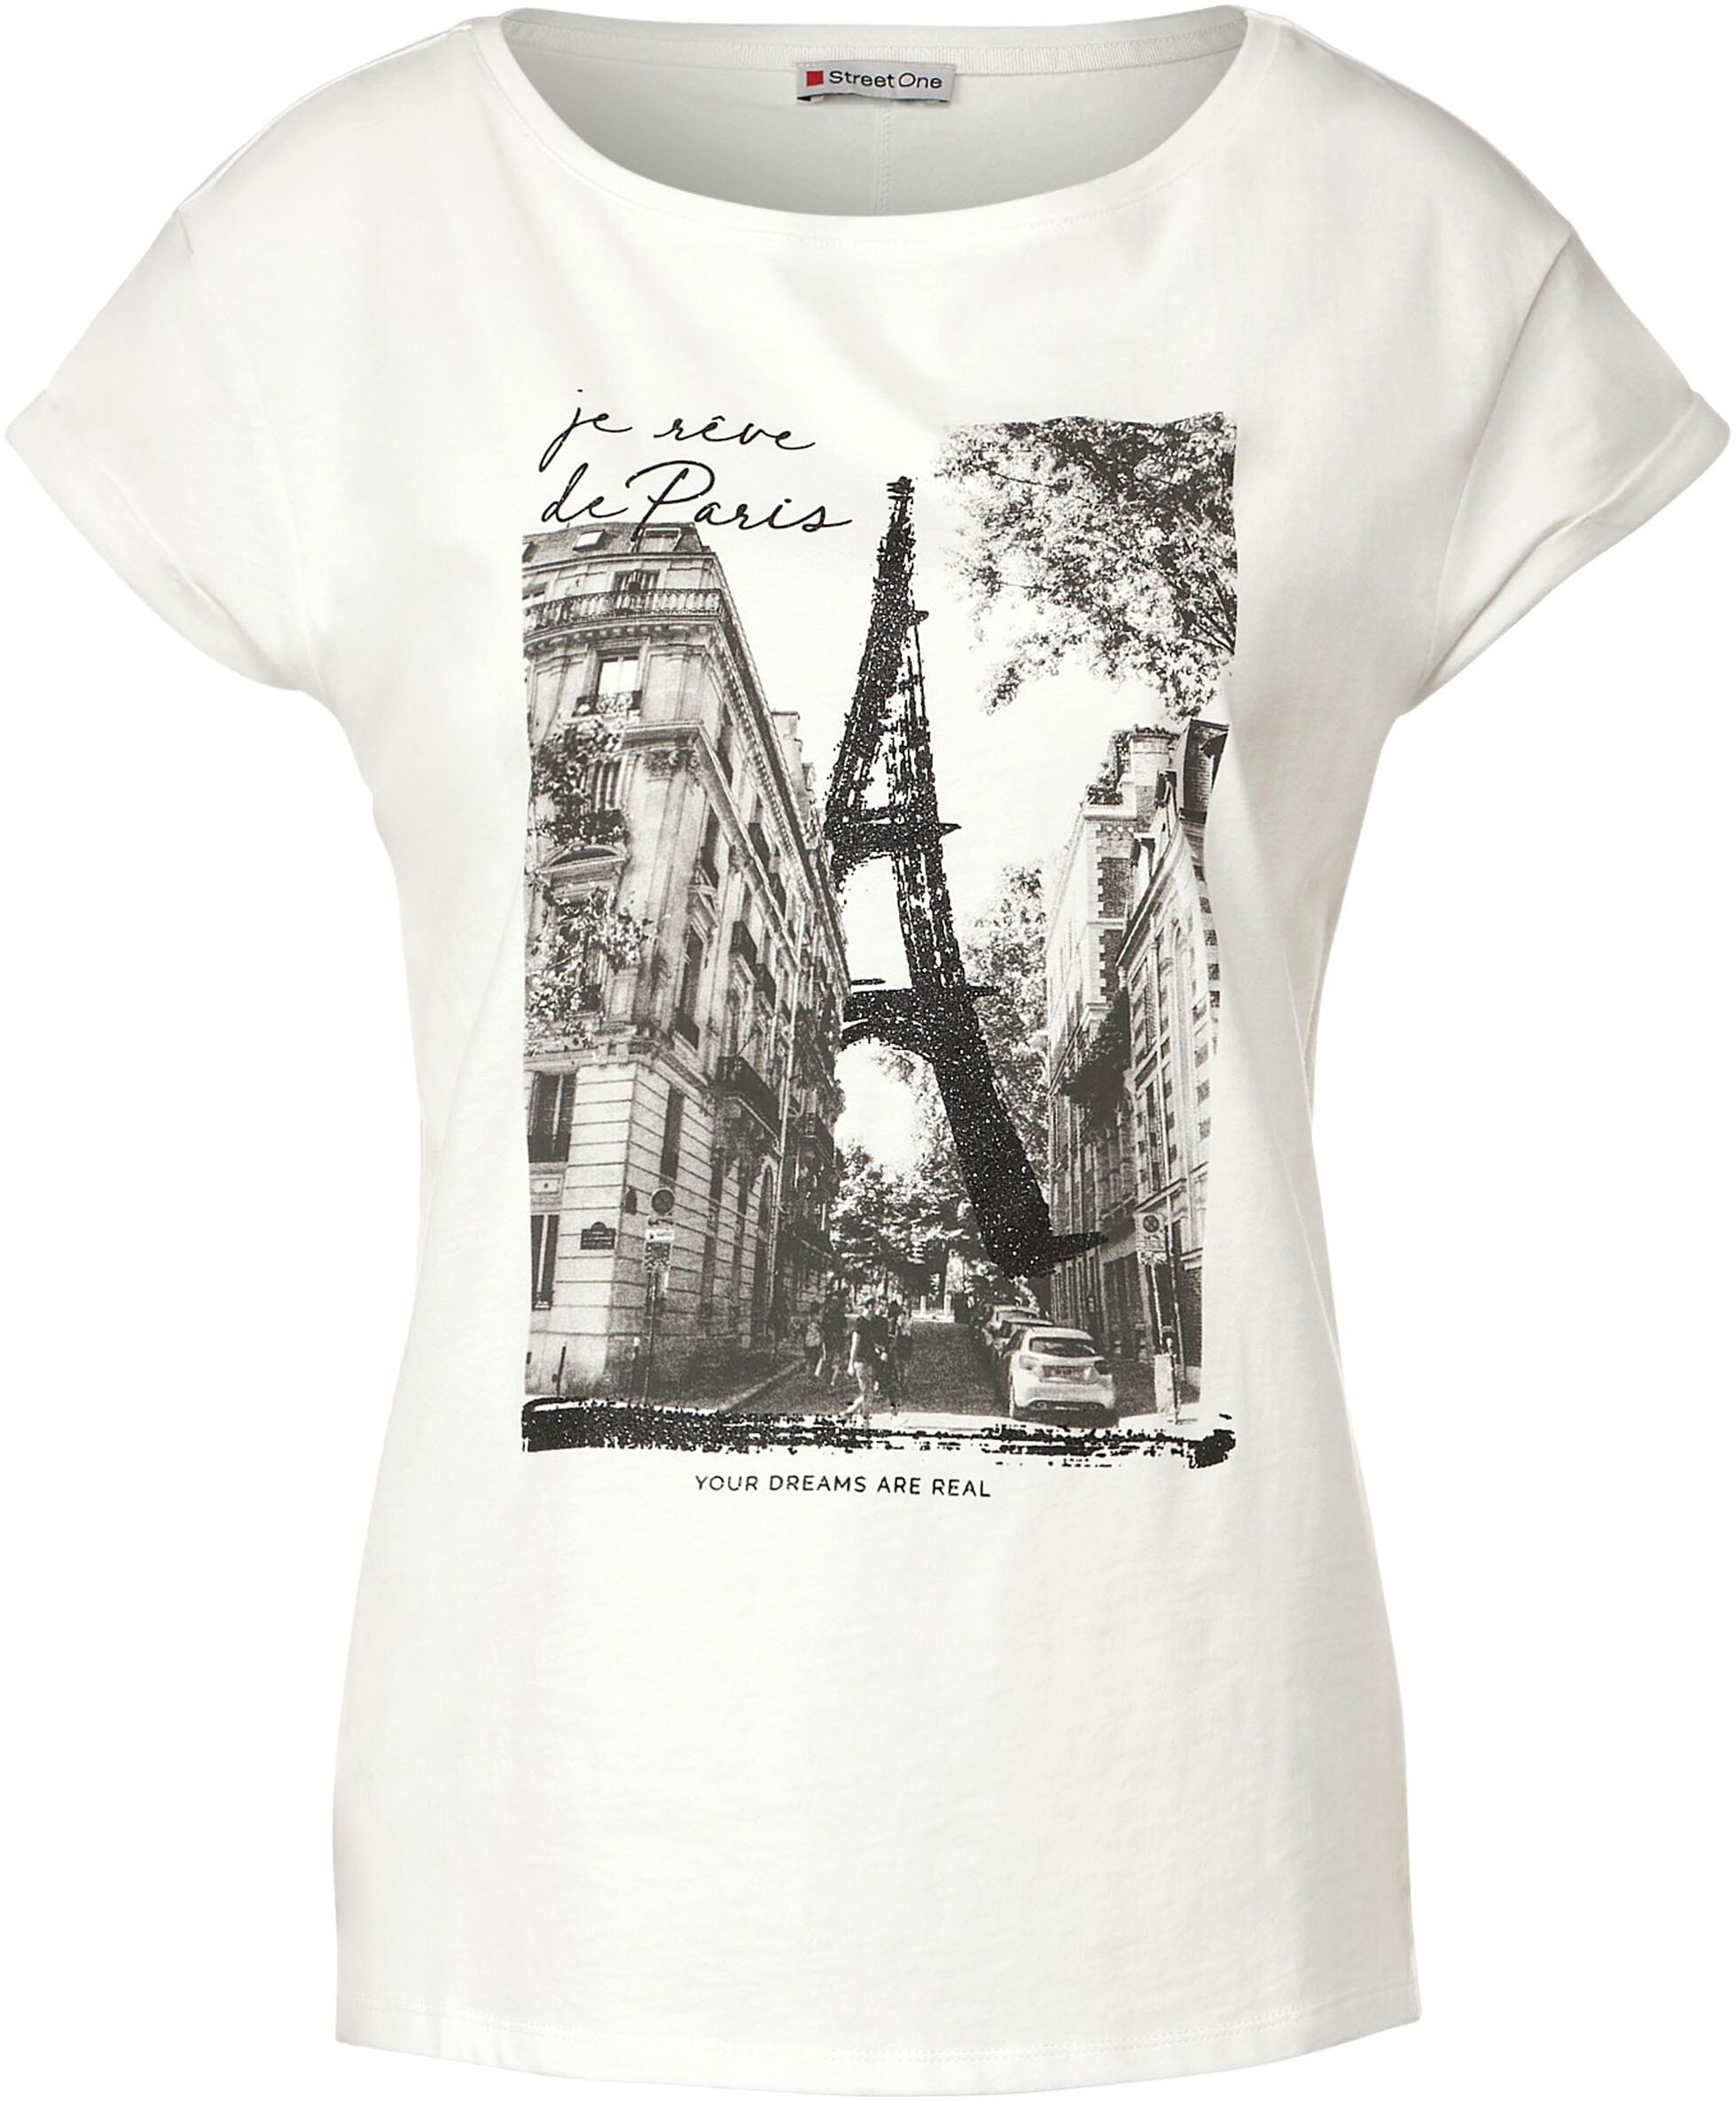 STREET ONE T-Shirt, Umschlagbund Jelmoli-Versand am bei shoppen online mit Schweiz Ärmelabschluss